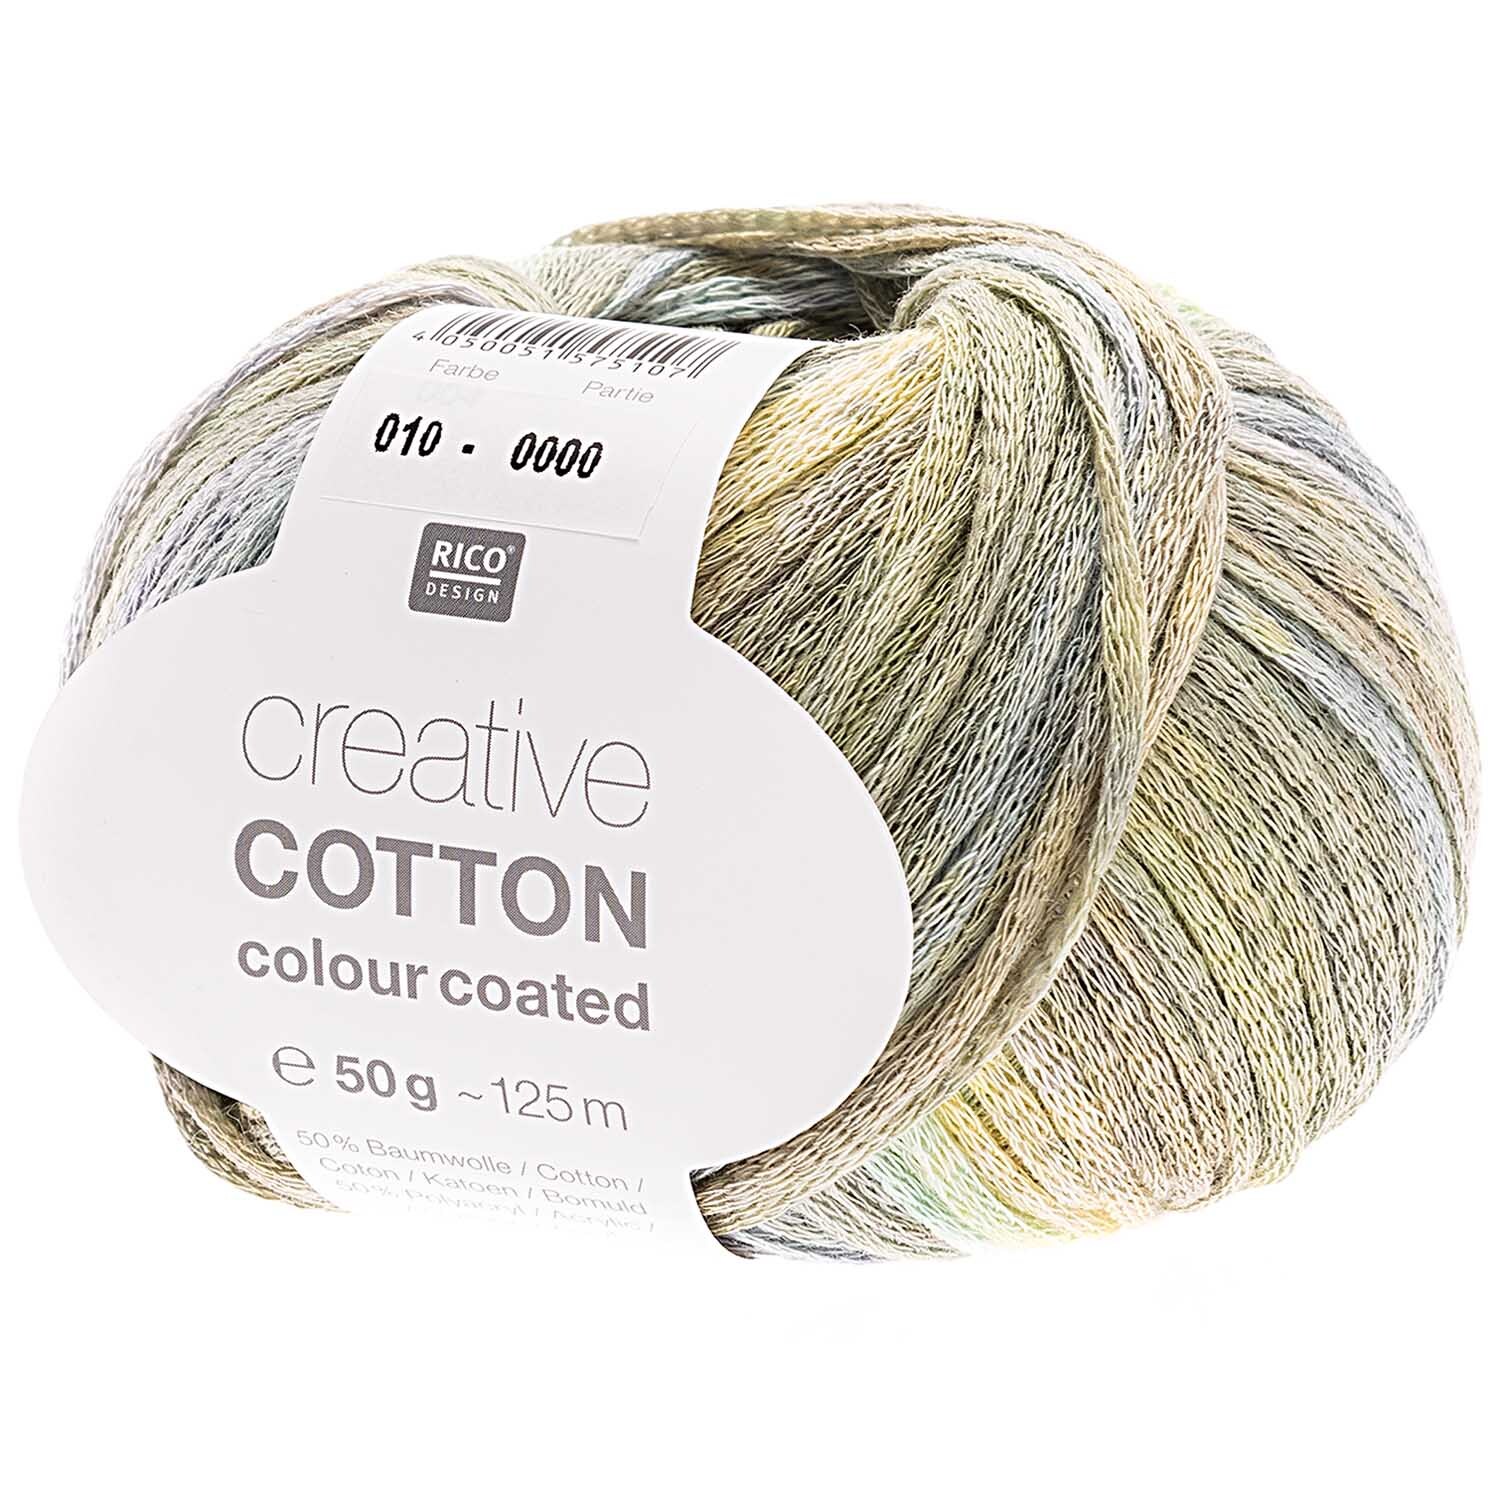 Creative Cotton Colour Coated